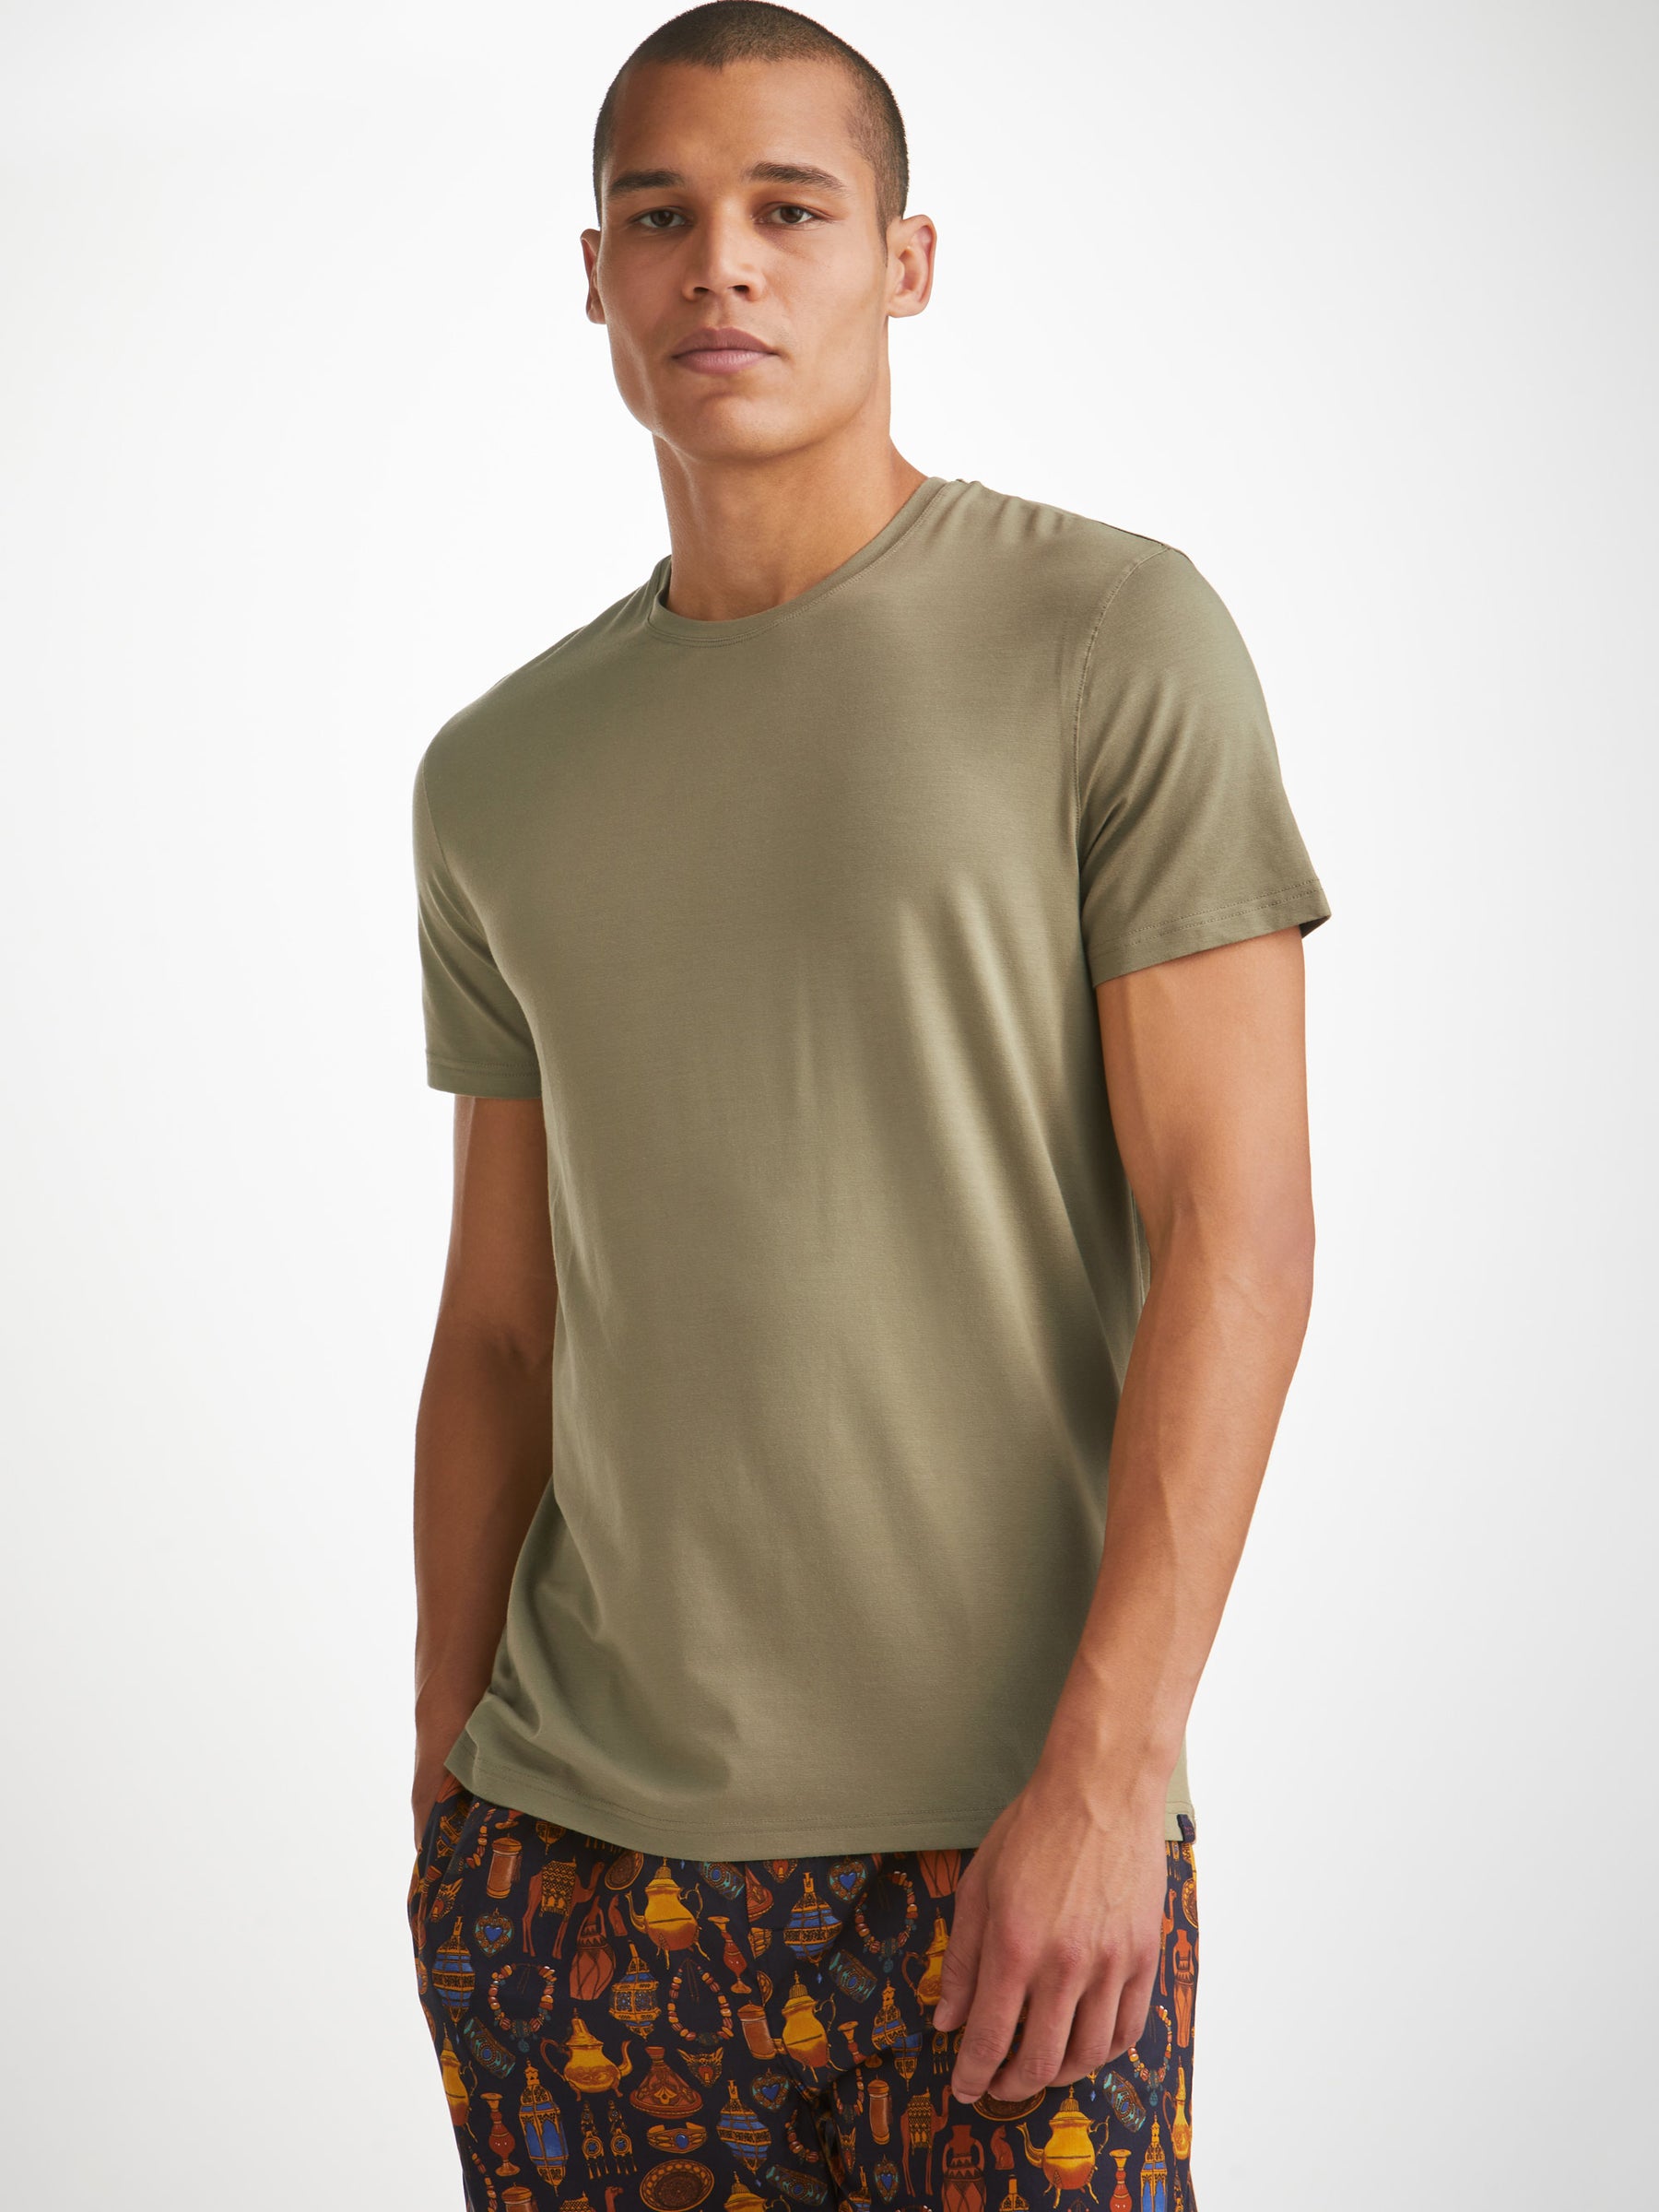 Men's T-Shirt Basel Micro Modal Stretch Khaki